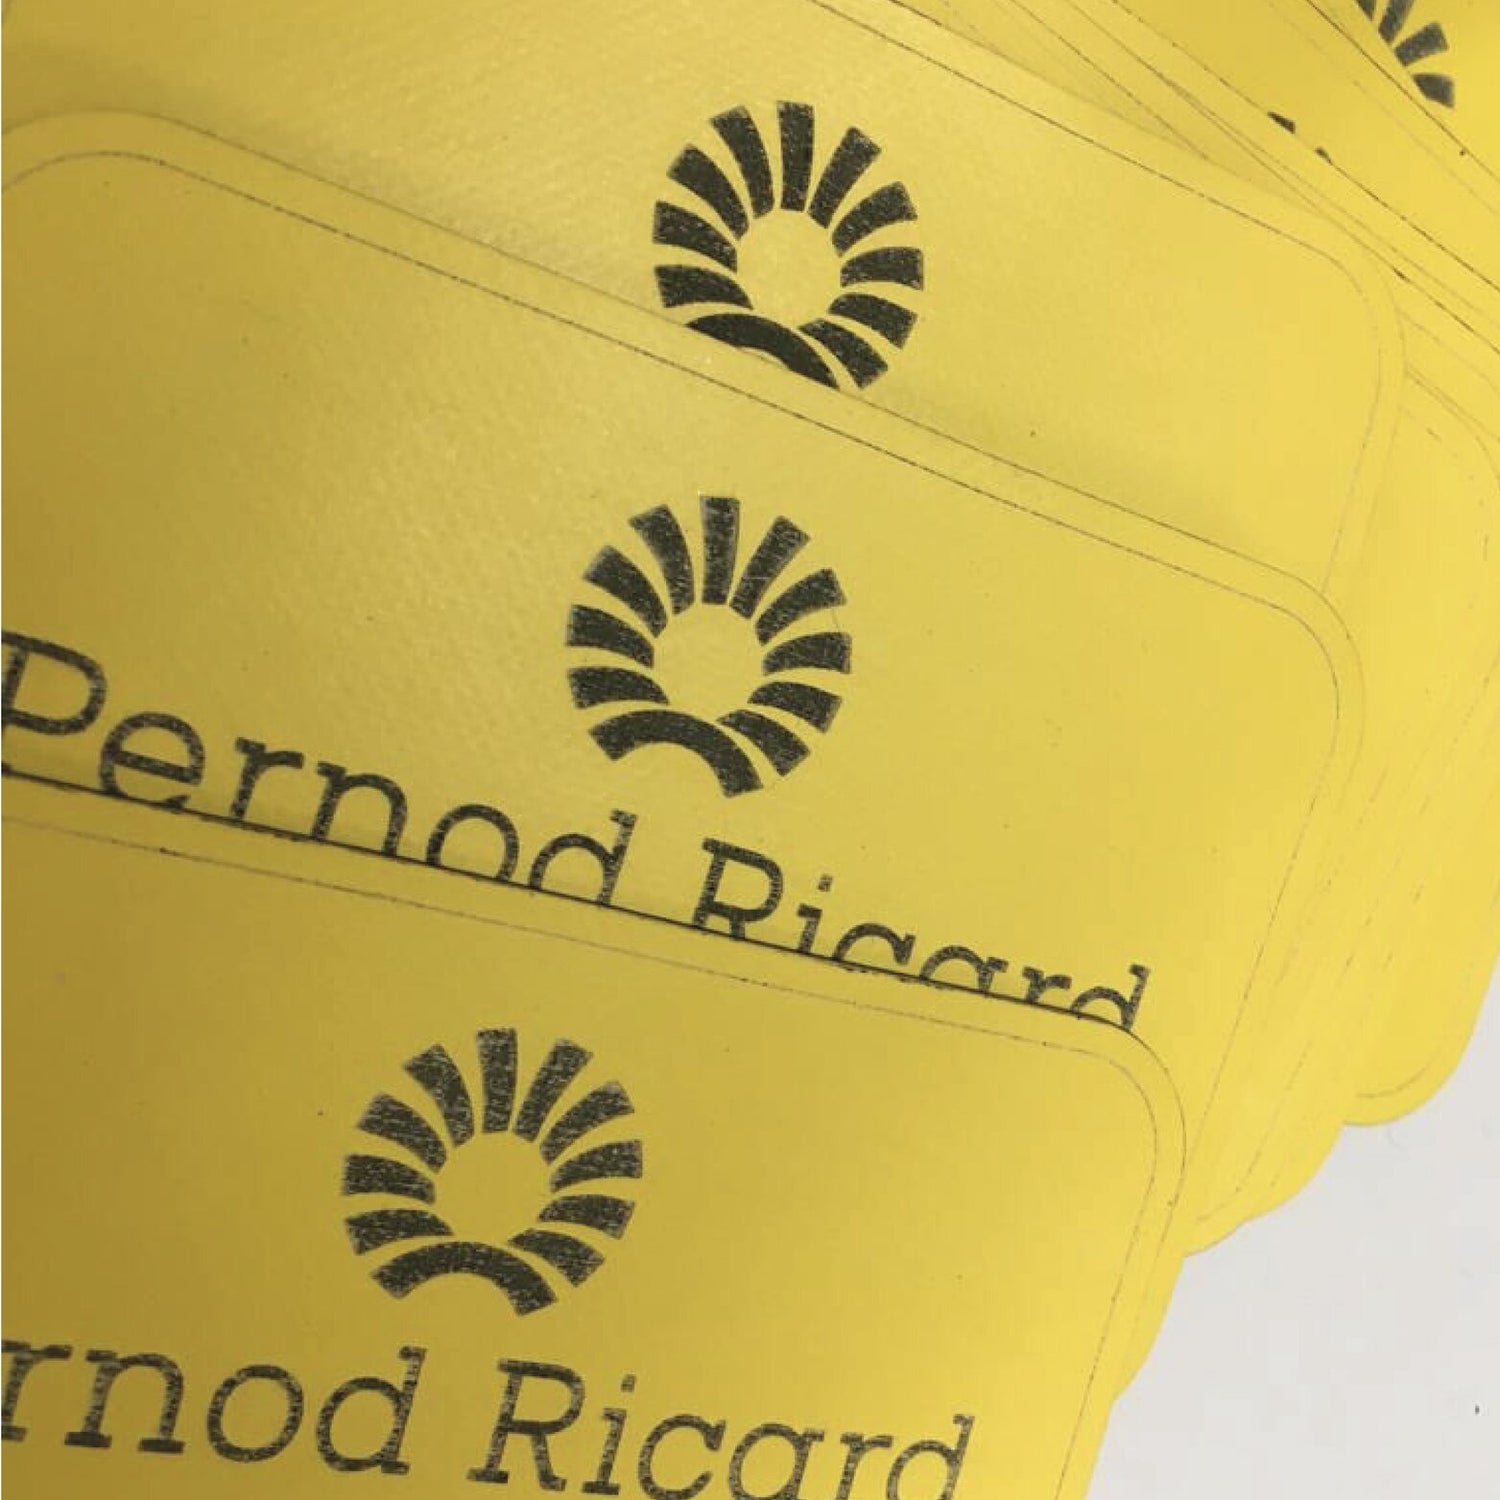 Le logo Pernod Ricard, prêt à être cousu sur leurs sacs de voyage 35L personnalisés par La Virgule